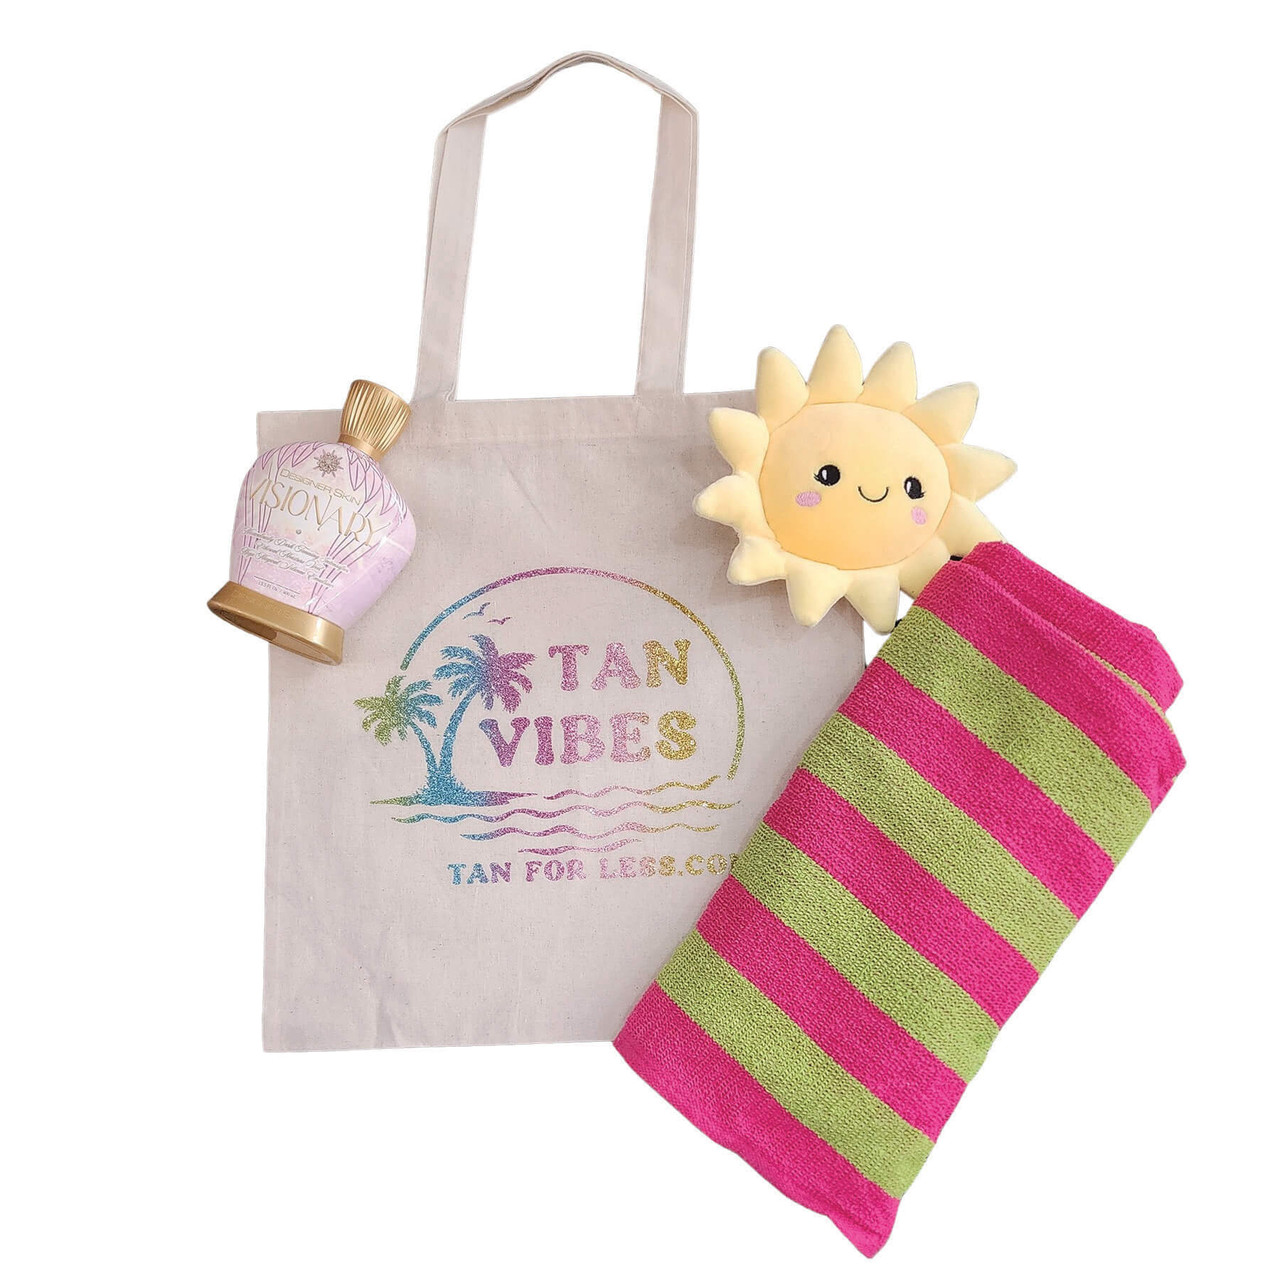 Tan for Less Tote Bag/Summer Tote/Beach Bag/Tanning Tote Bag